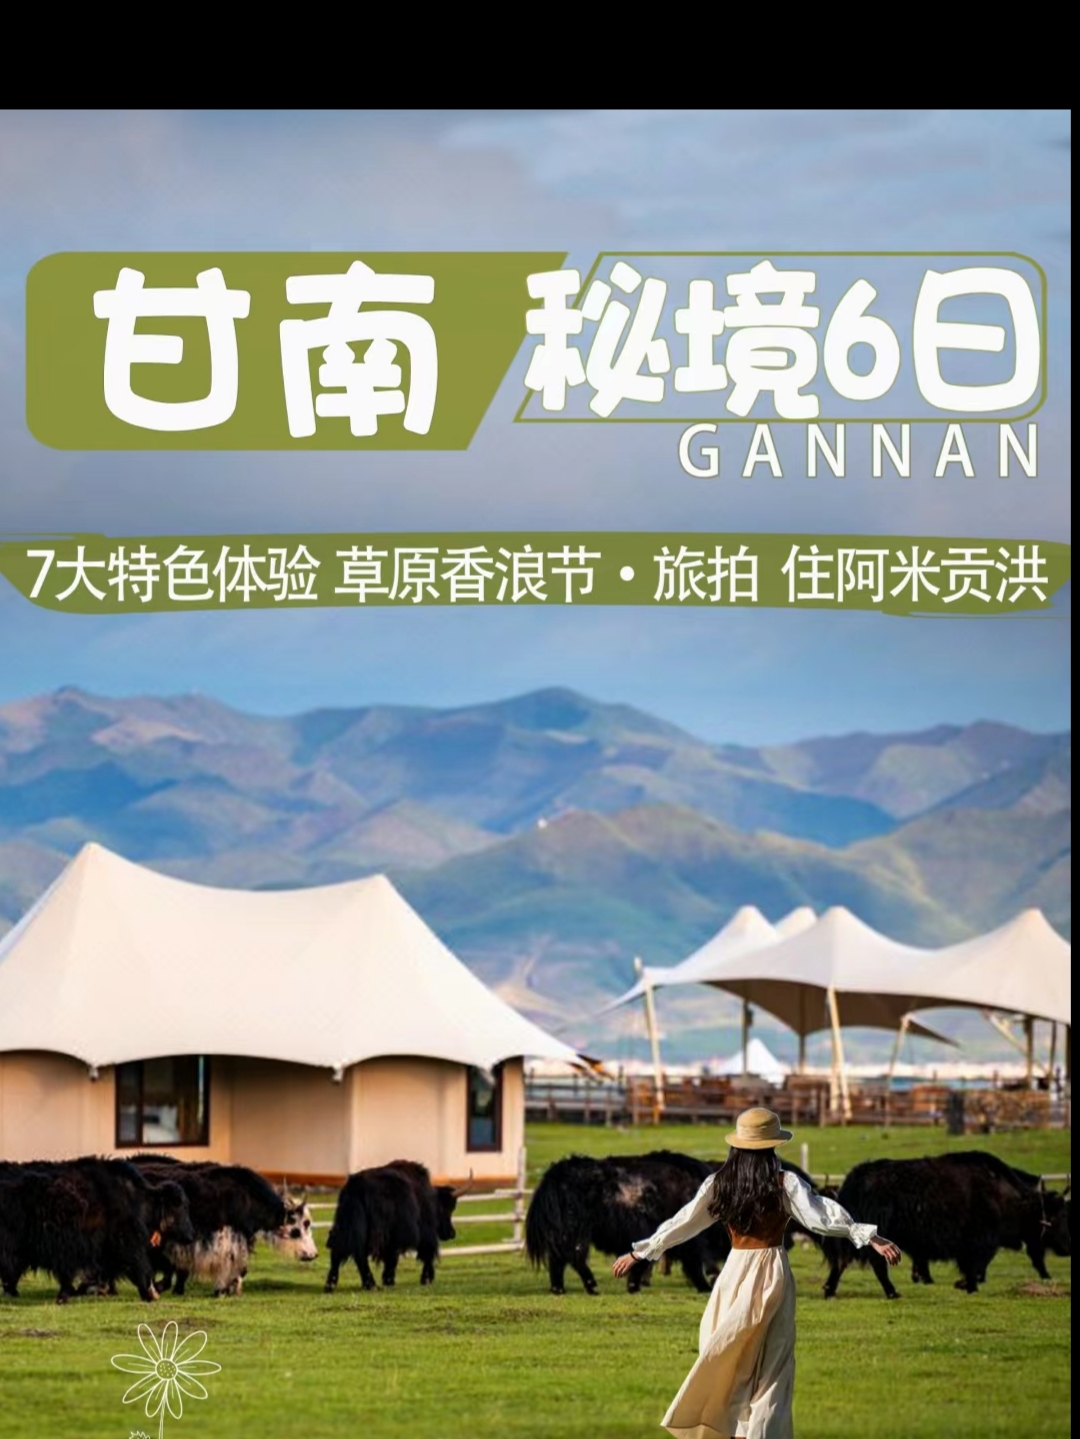 6天去甘南撒欢体验藏民游牧＆住阿米贡洪 五一期间，将迎来甘南最美出游季节如果这辈子去一次甘南，我敢说